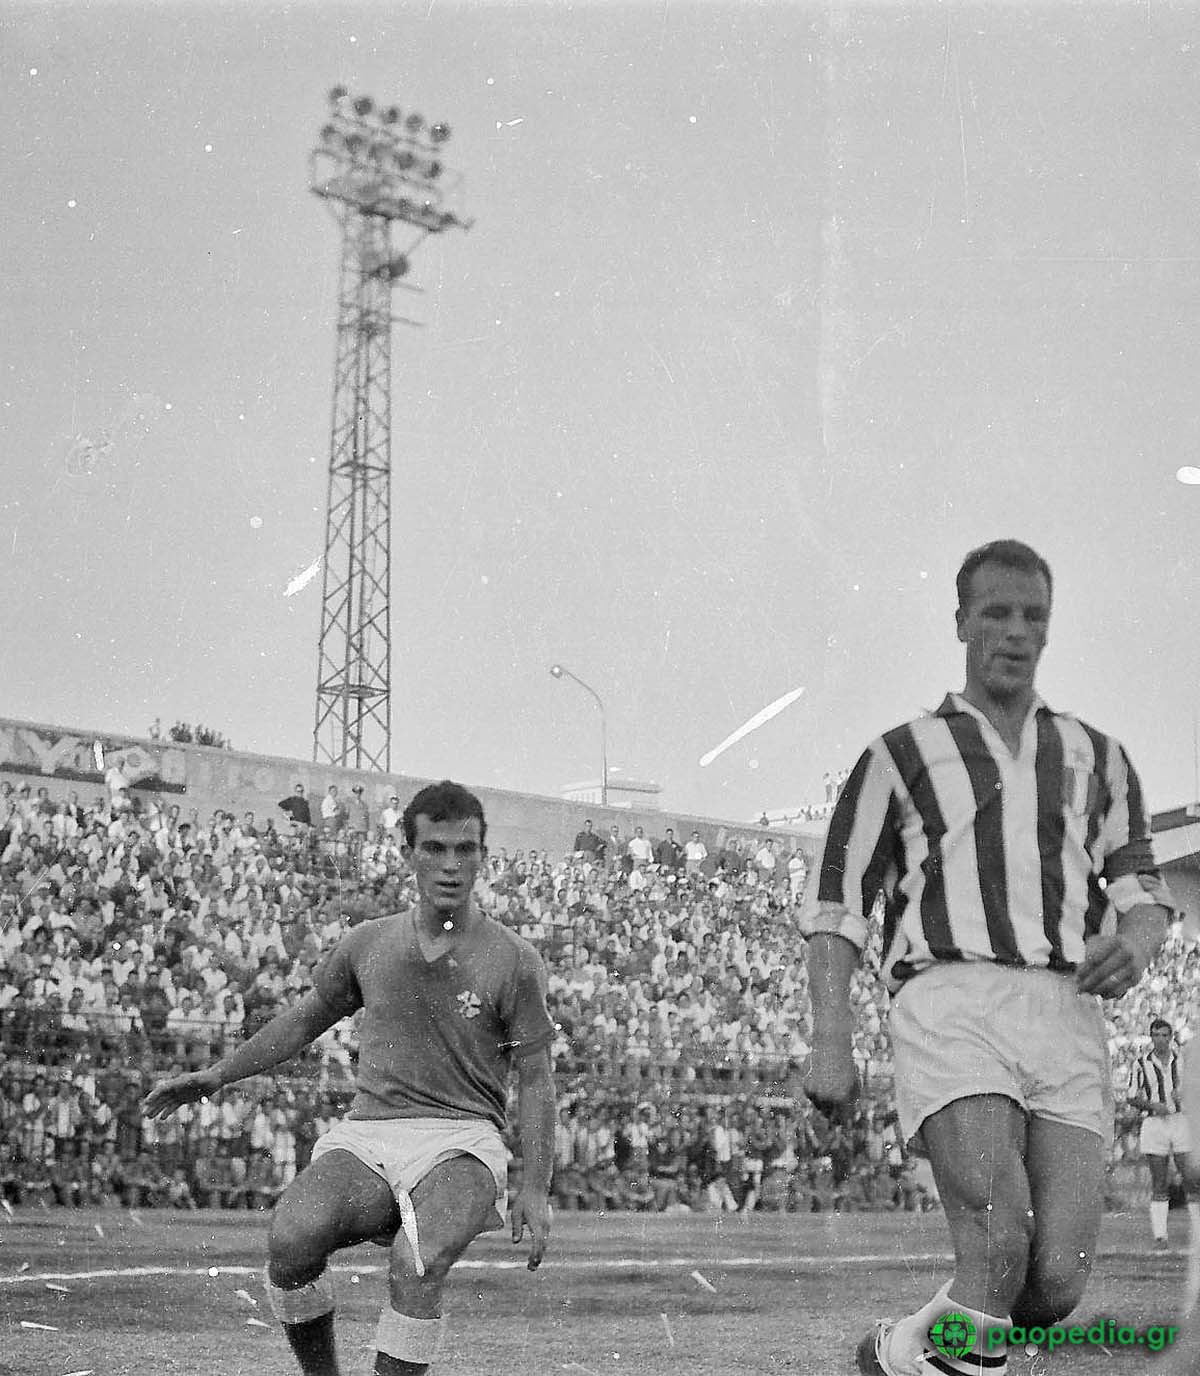 Μίμης Δομάζος, Τζον Τσαρλς, 1961 - Παναθηναϊκός - Γιουβέντους 1-1. paopedia.gr